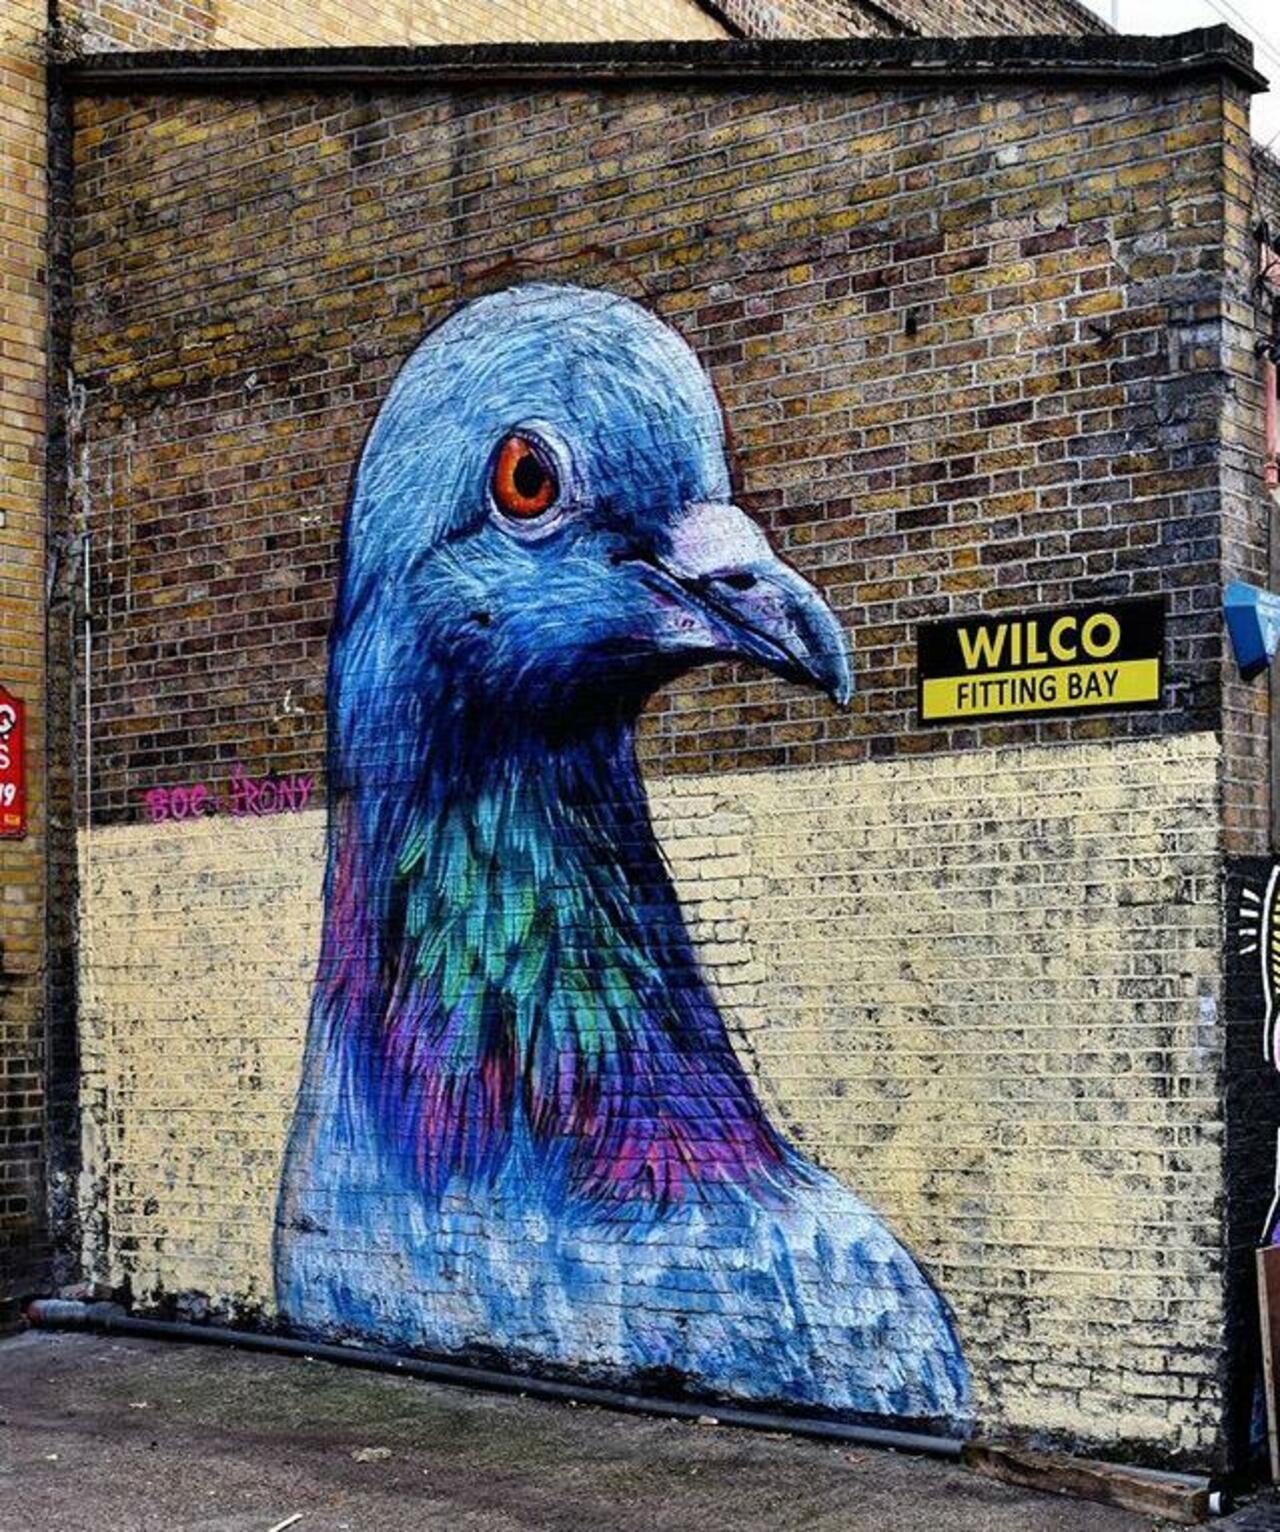 Street Art by Placee Boe & whoamirony in London 

#art #graffiti #mural #streetart http://t.co/HrCe9a5MpP